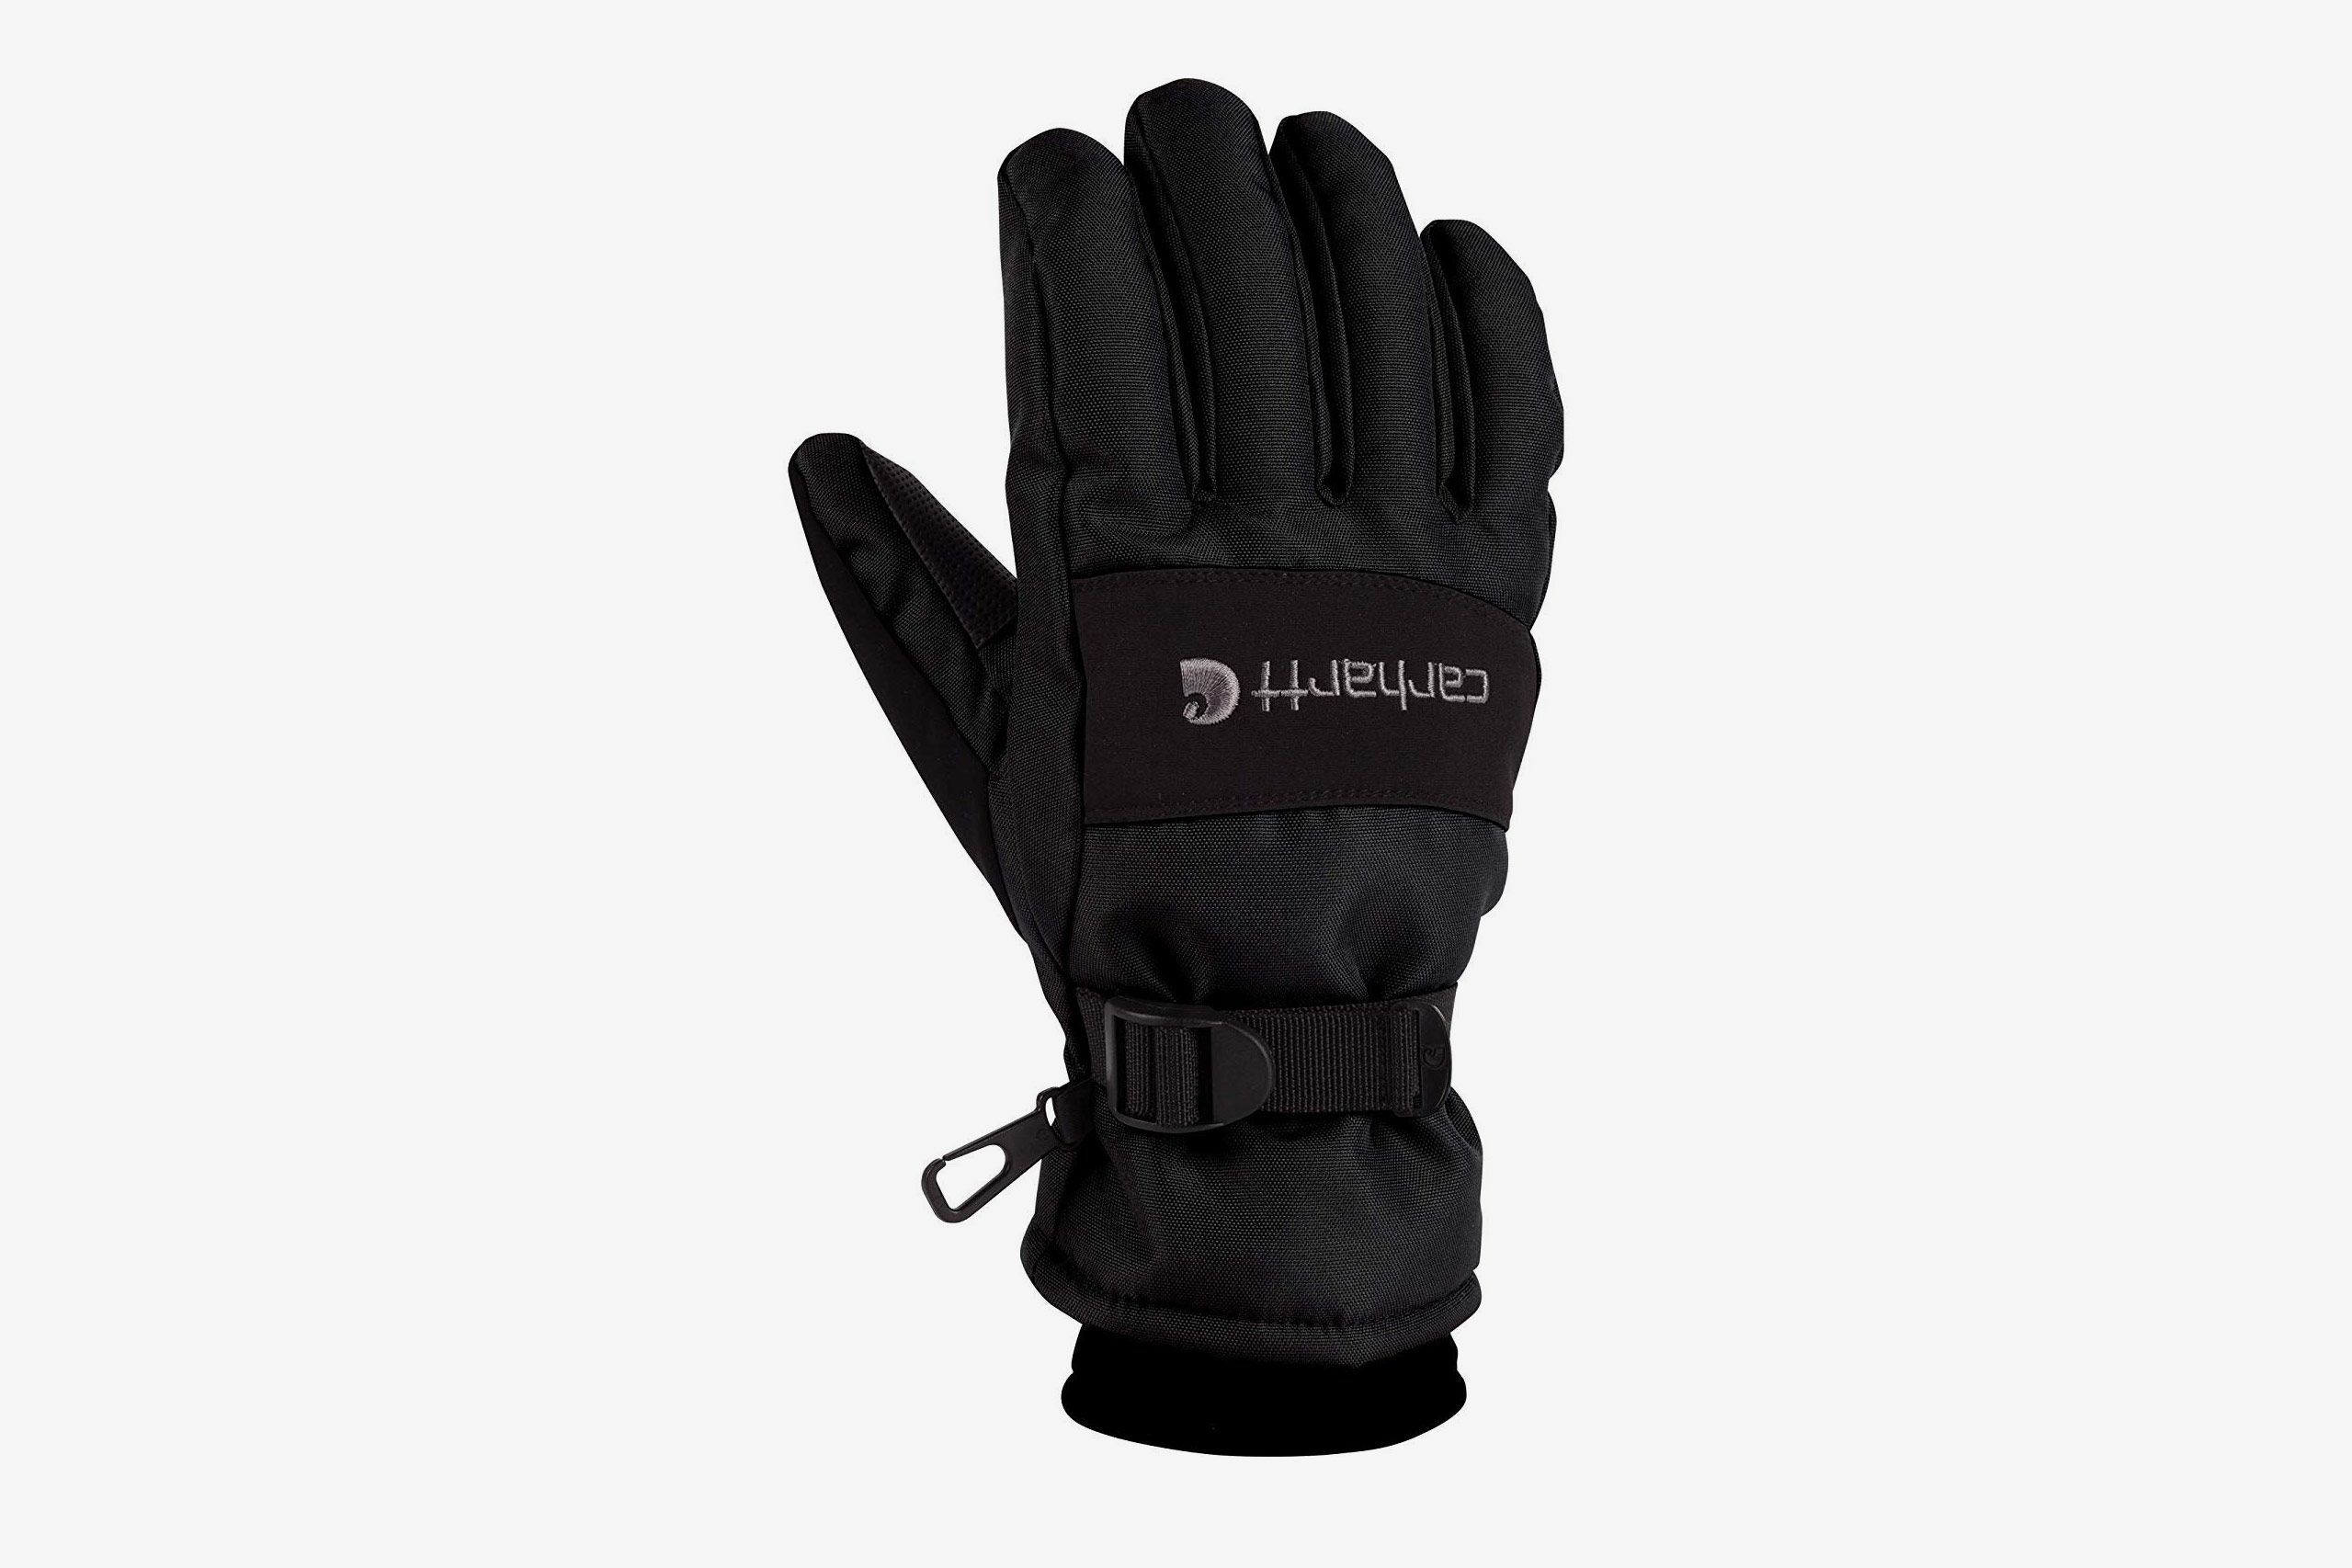 Warmeez Winter insulated waterproof Gloves for Men 